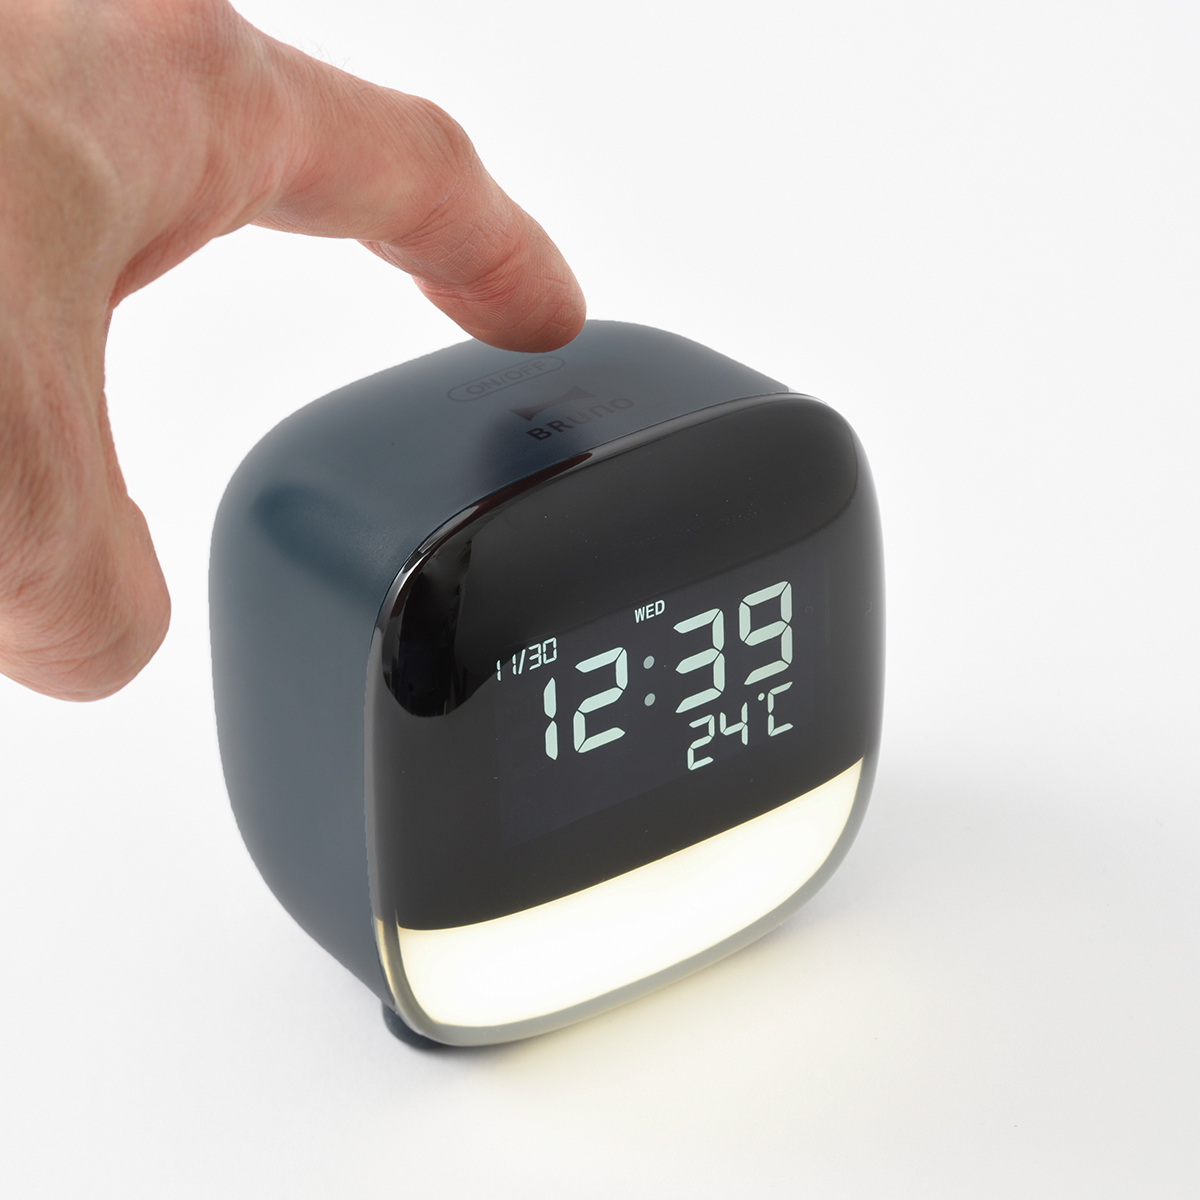 置き時計 LEDライト デジタル 時計 目覚まし 卓上時計 温度表示 日付 緑